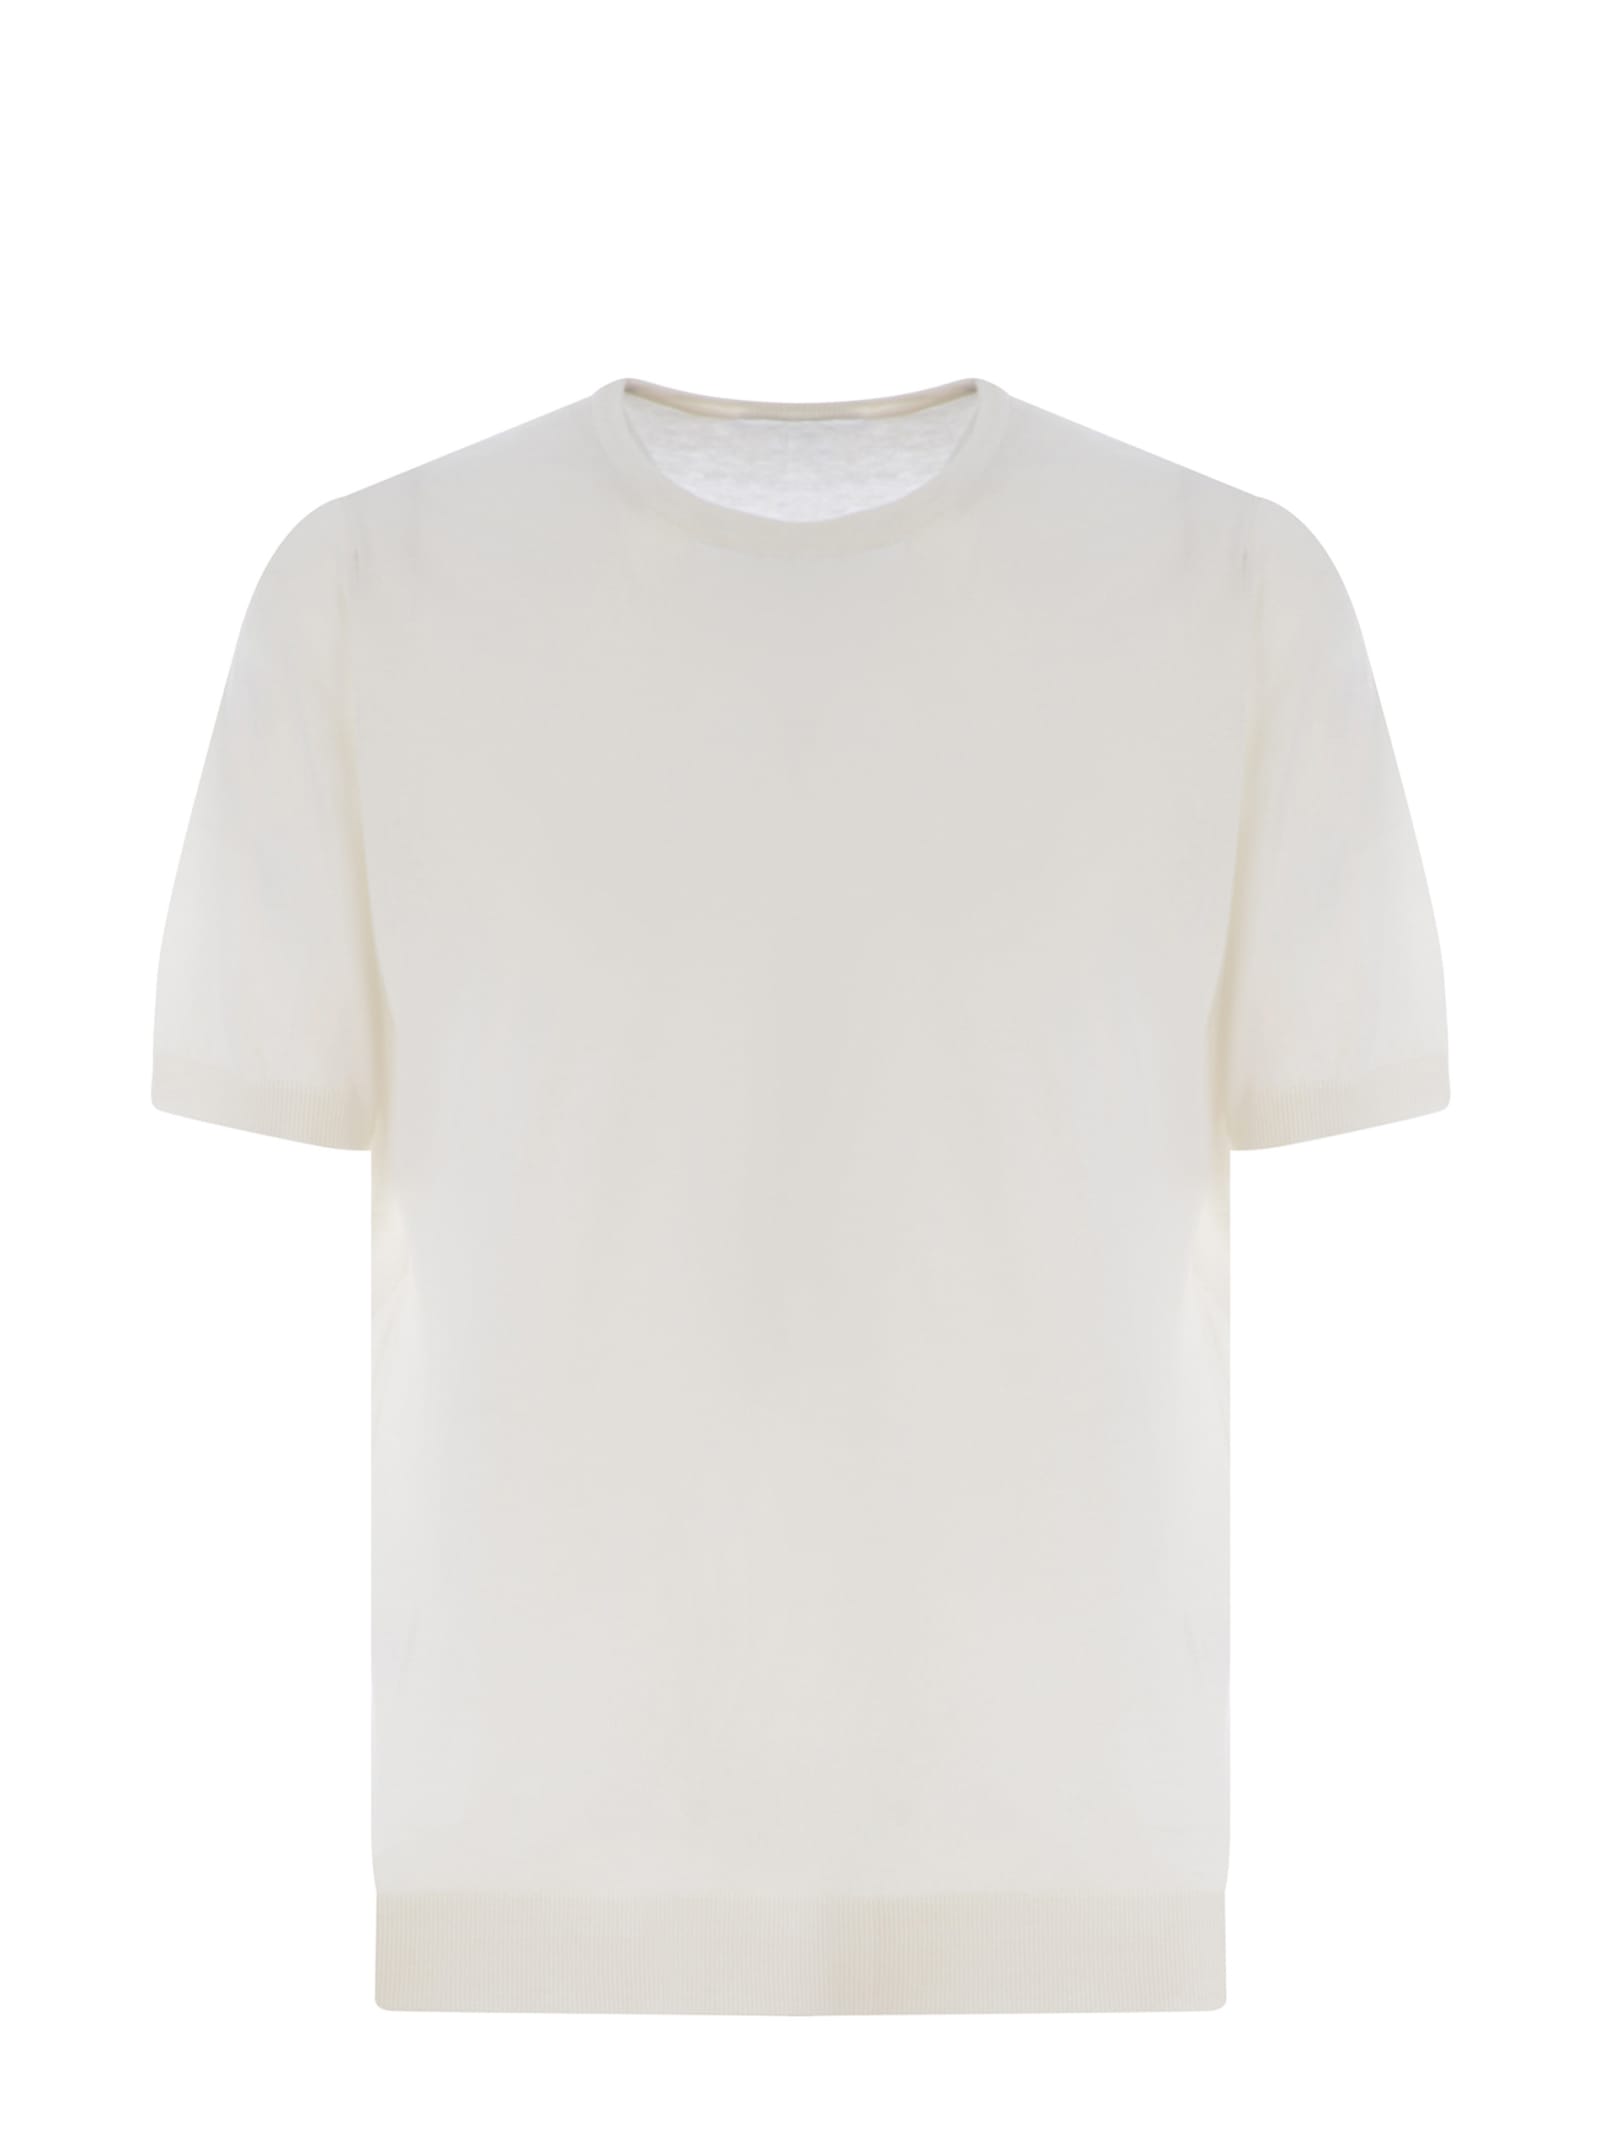 Tagliatore T-shirt  Made Of Silk In White